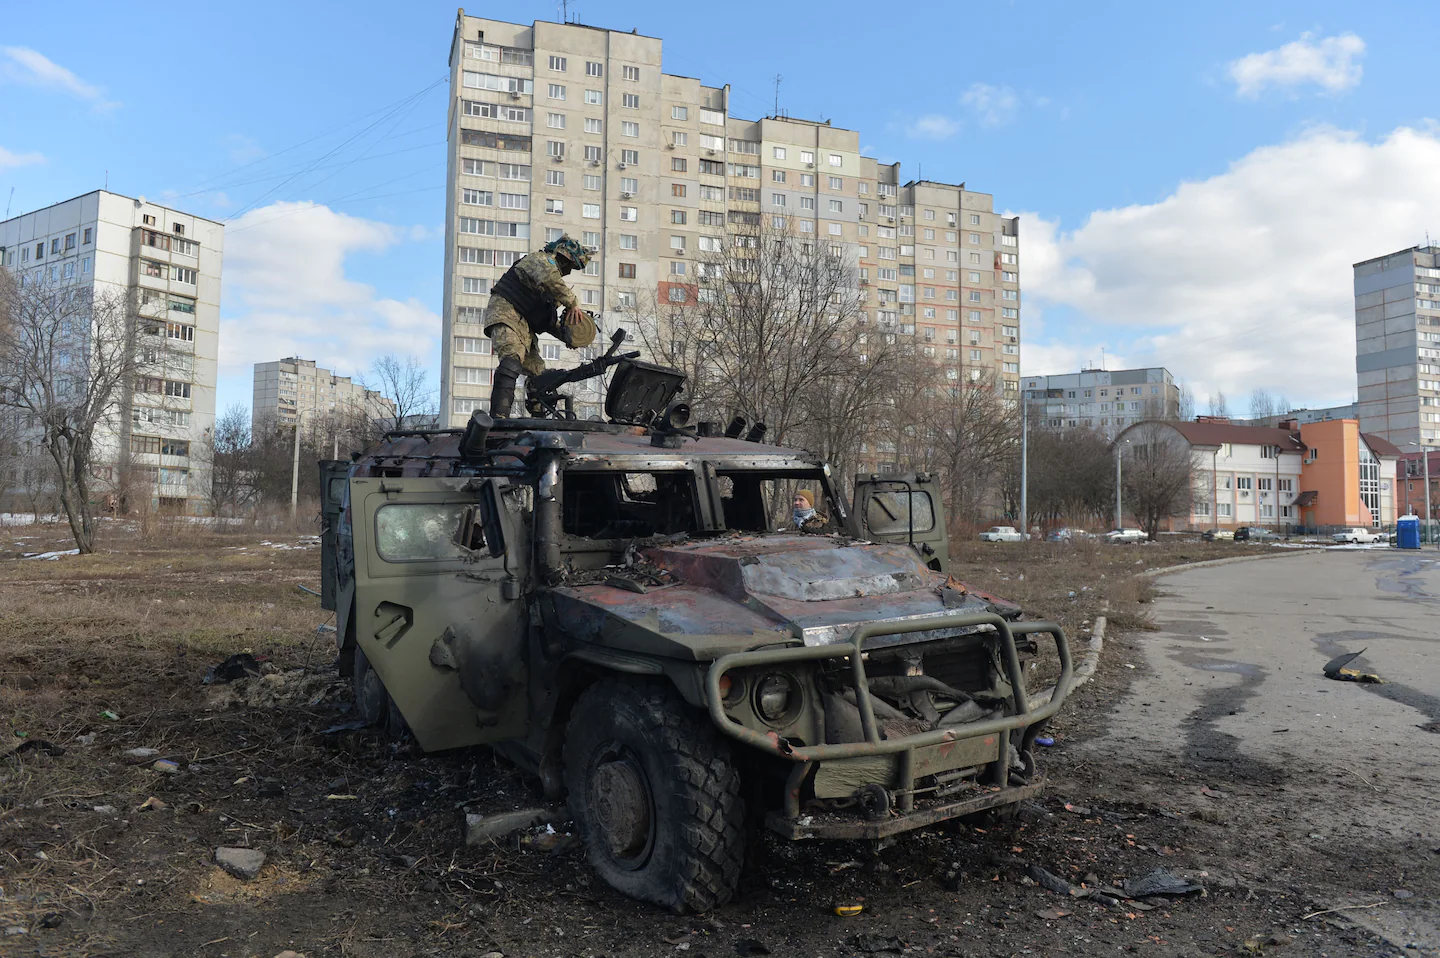 La guerra in Ucraina non sta andando come intendeva la Russia

